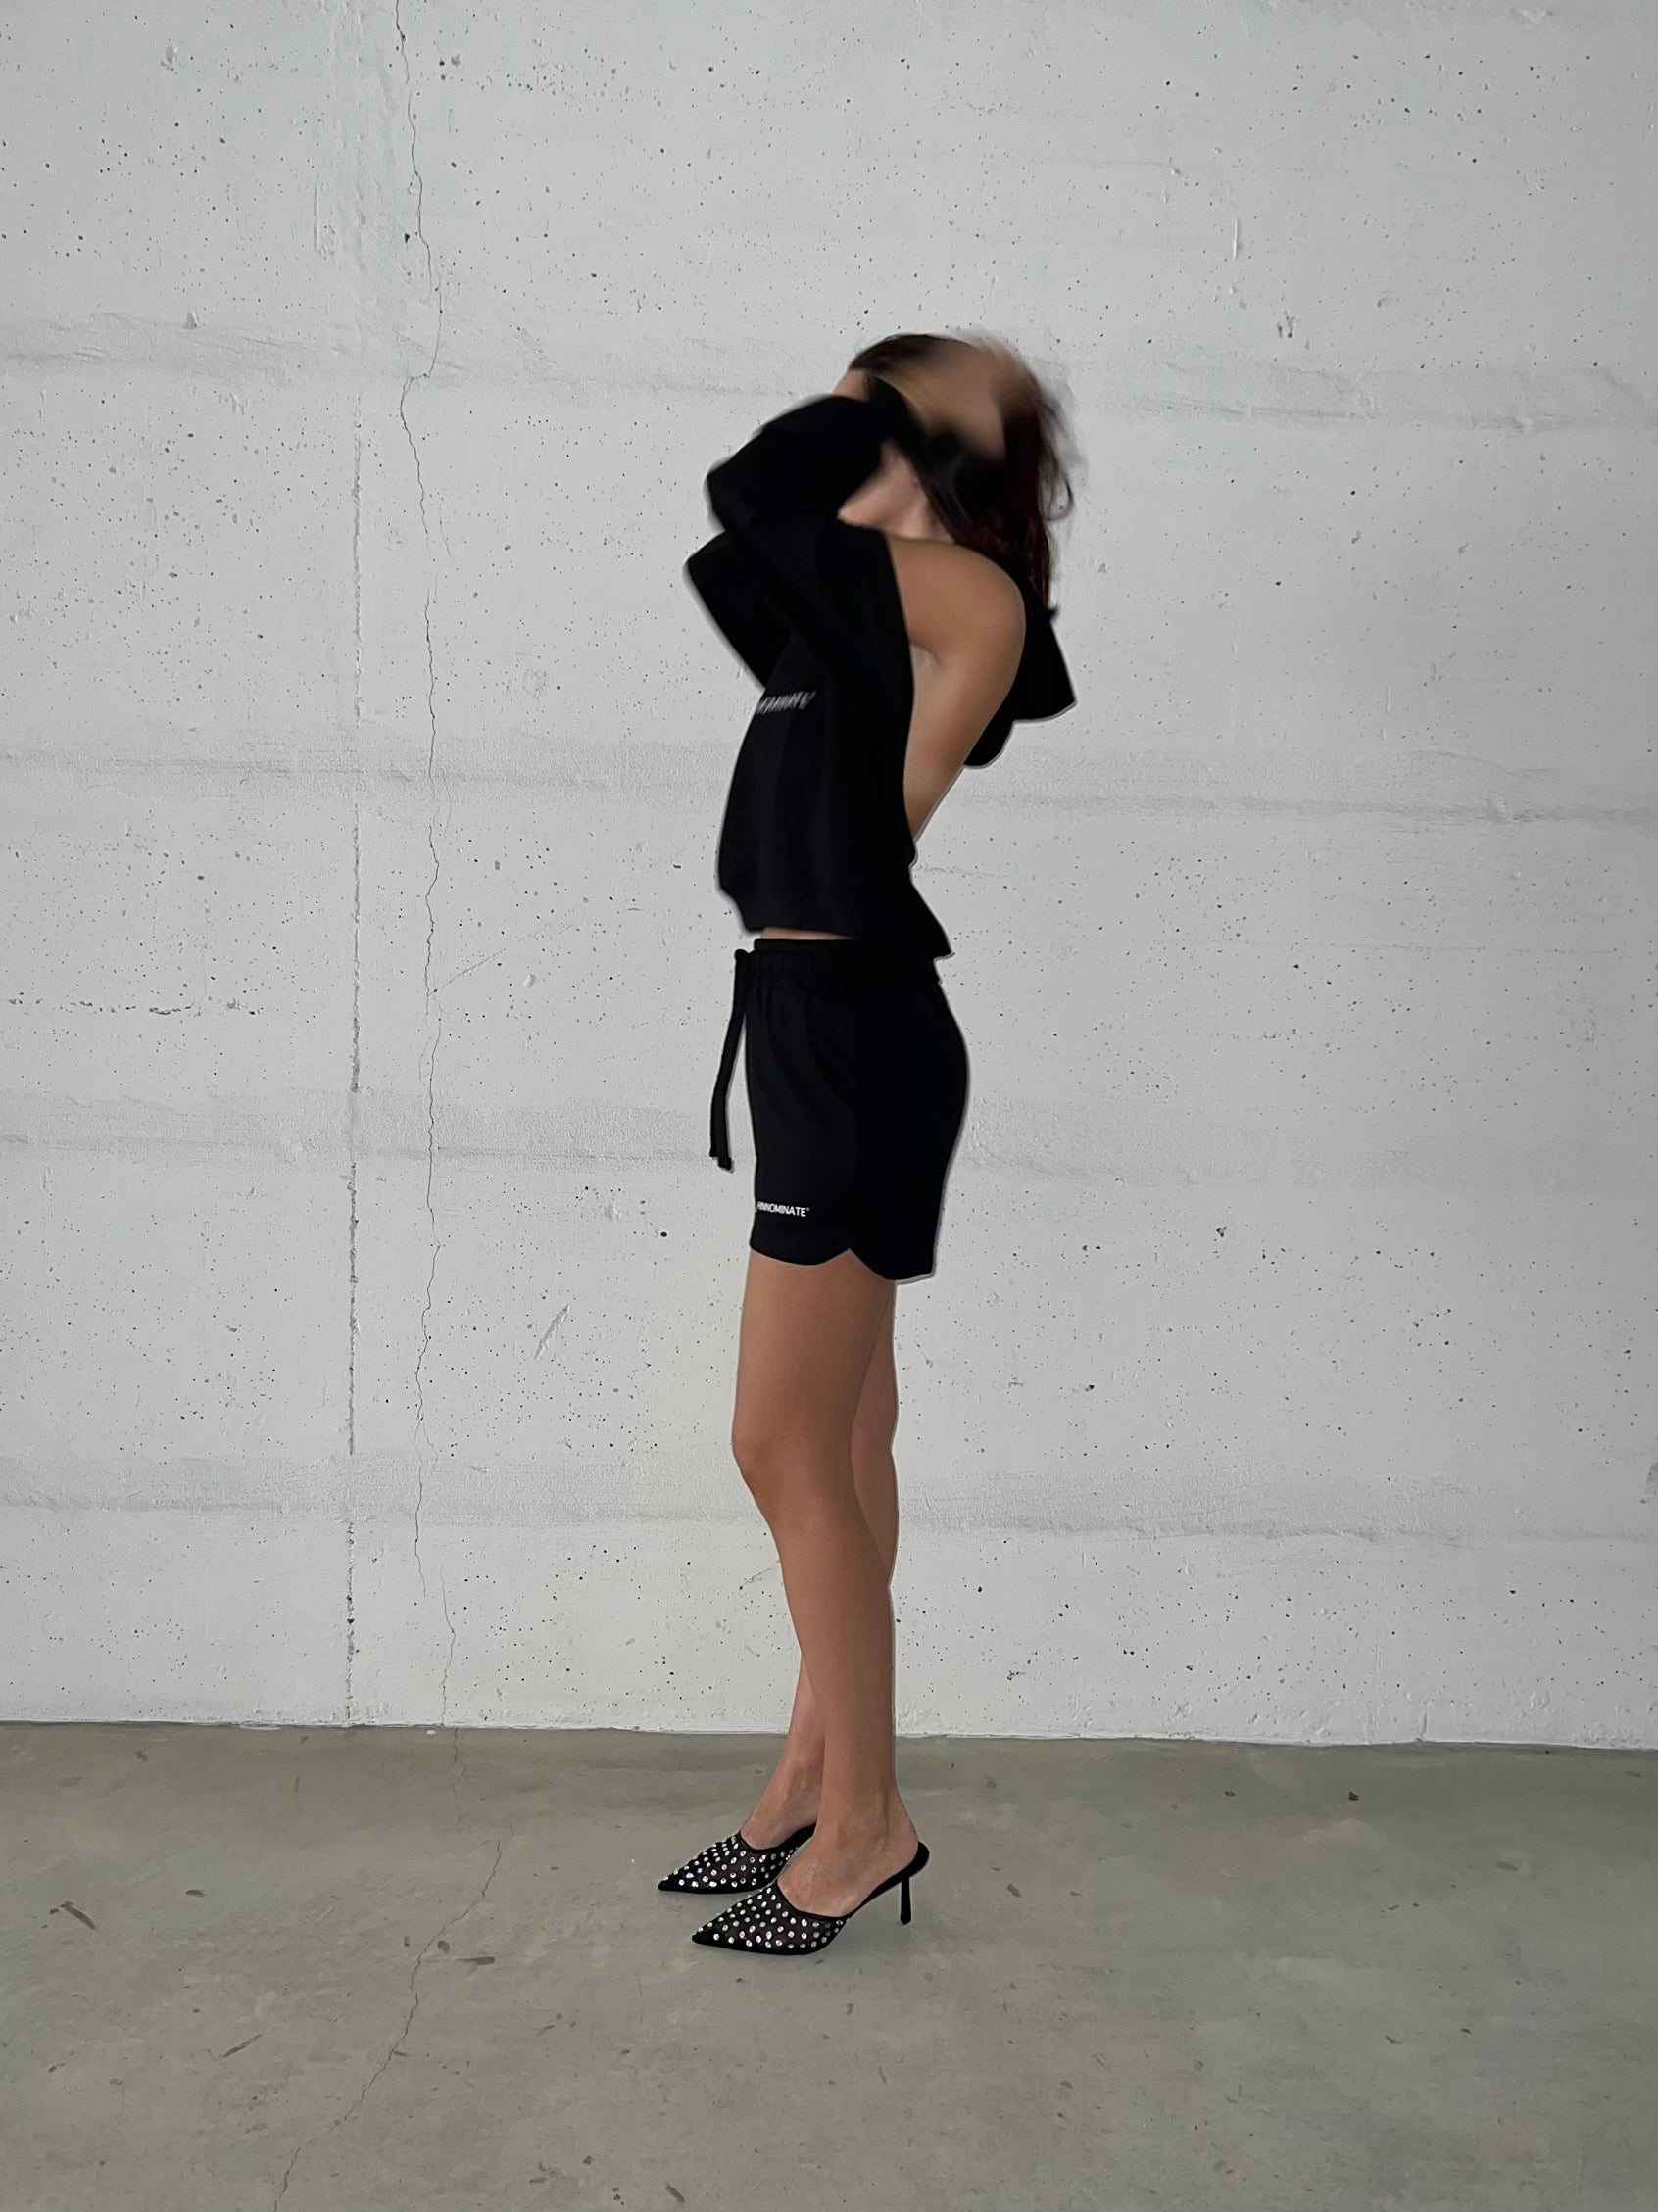 LM - Hinnominate Shorts corto nero con spacchi laterali